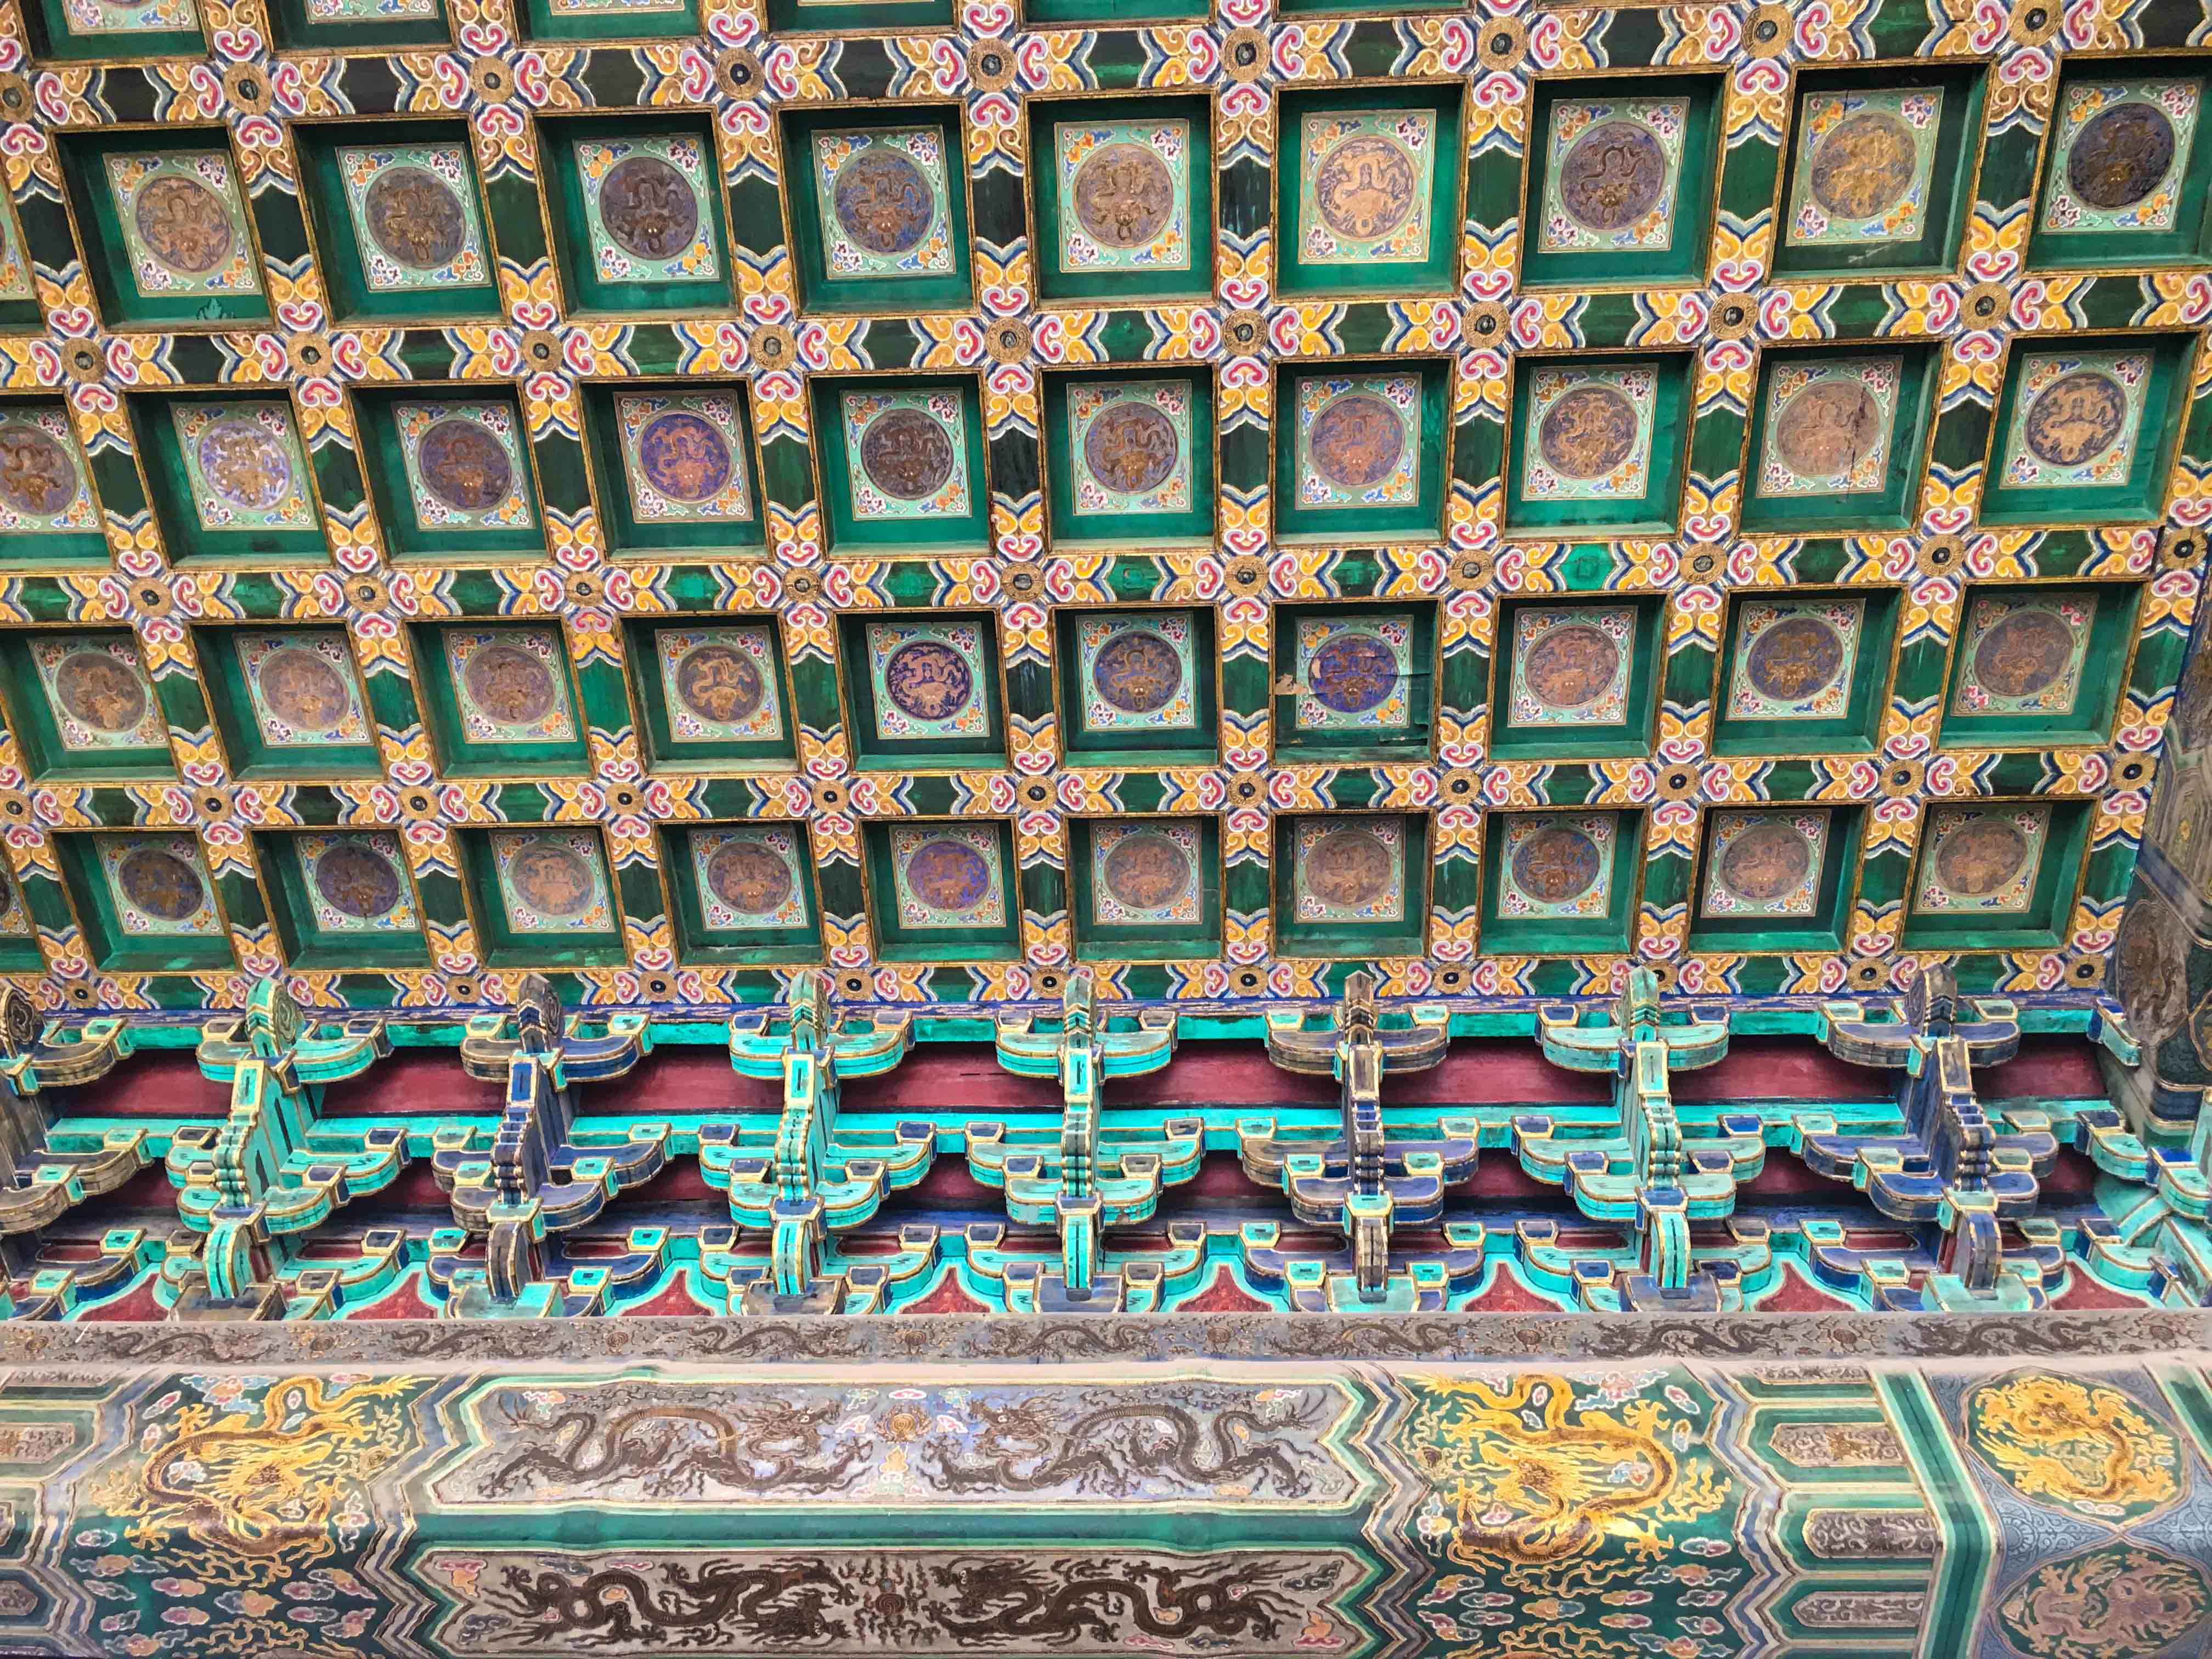 Forbidden city beijing ceiling